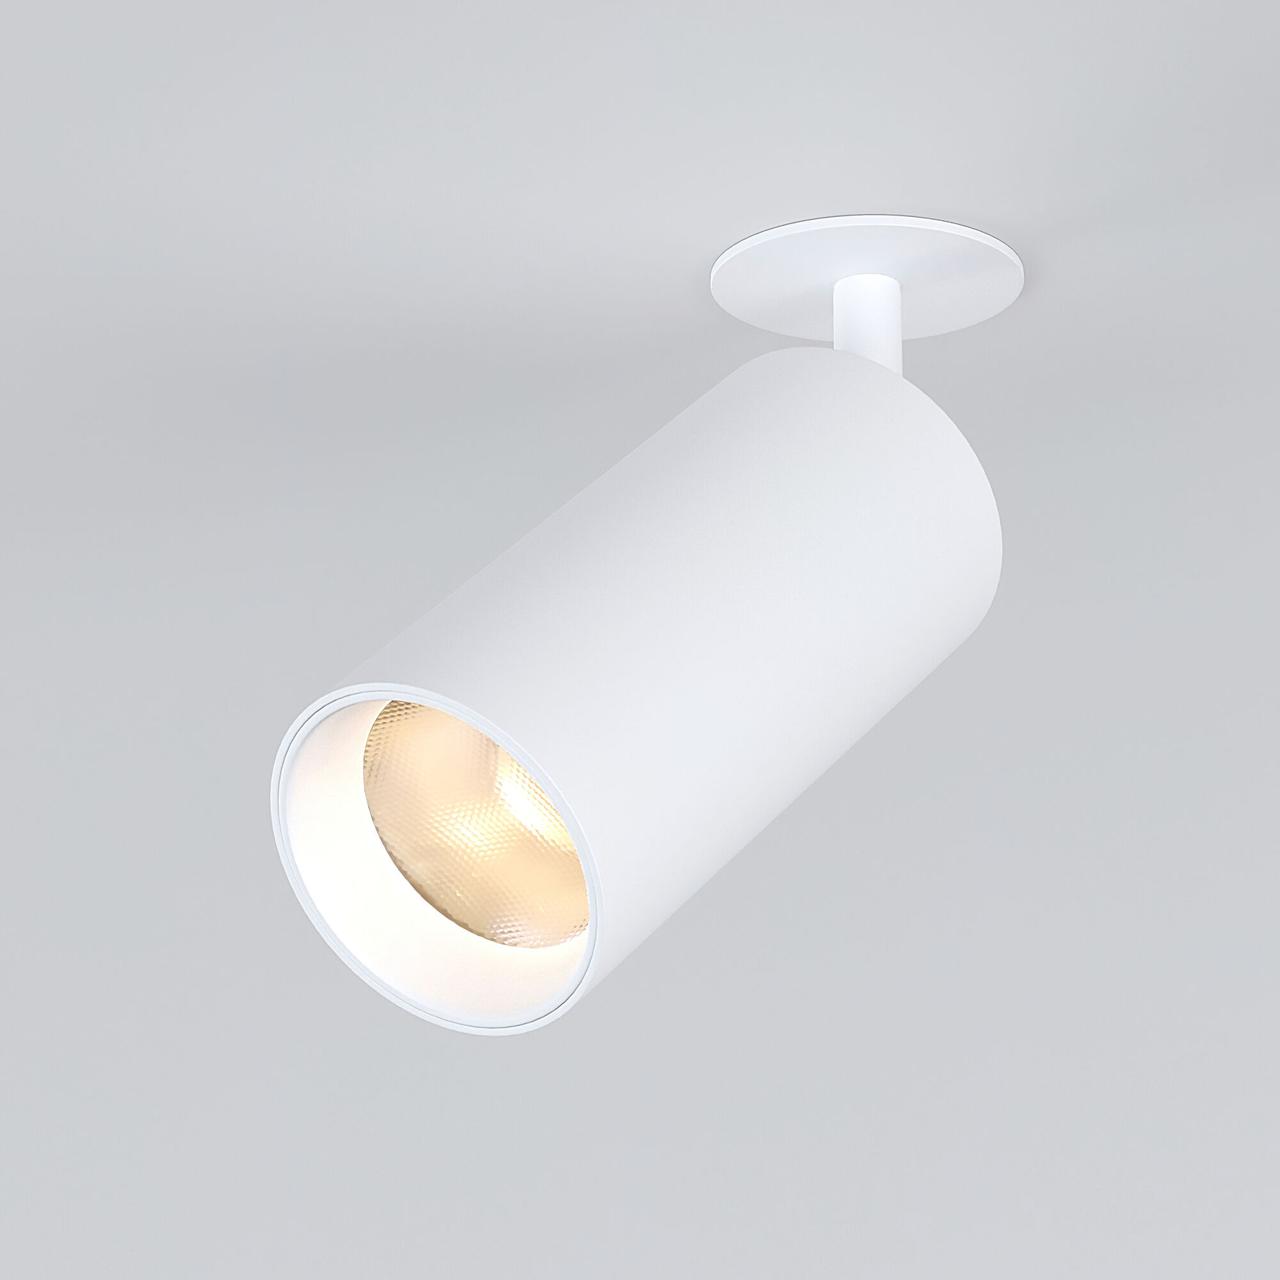 25066/LED 15W 4200K белый Встраиваемый светодиодный светильник Diffe